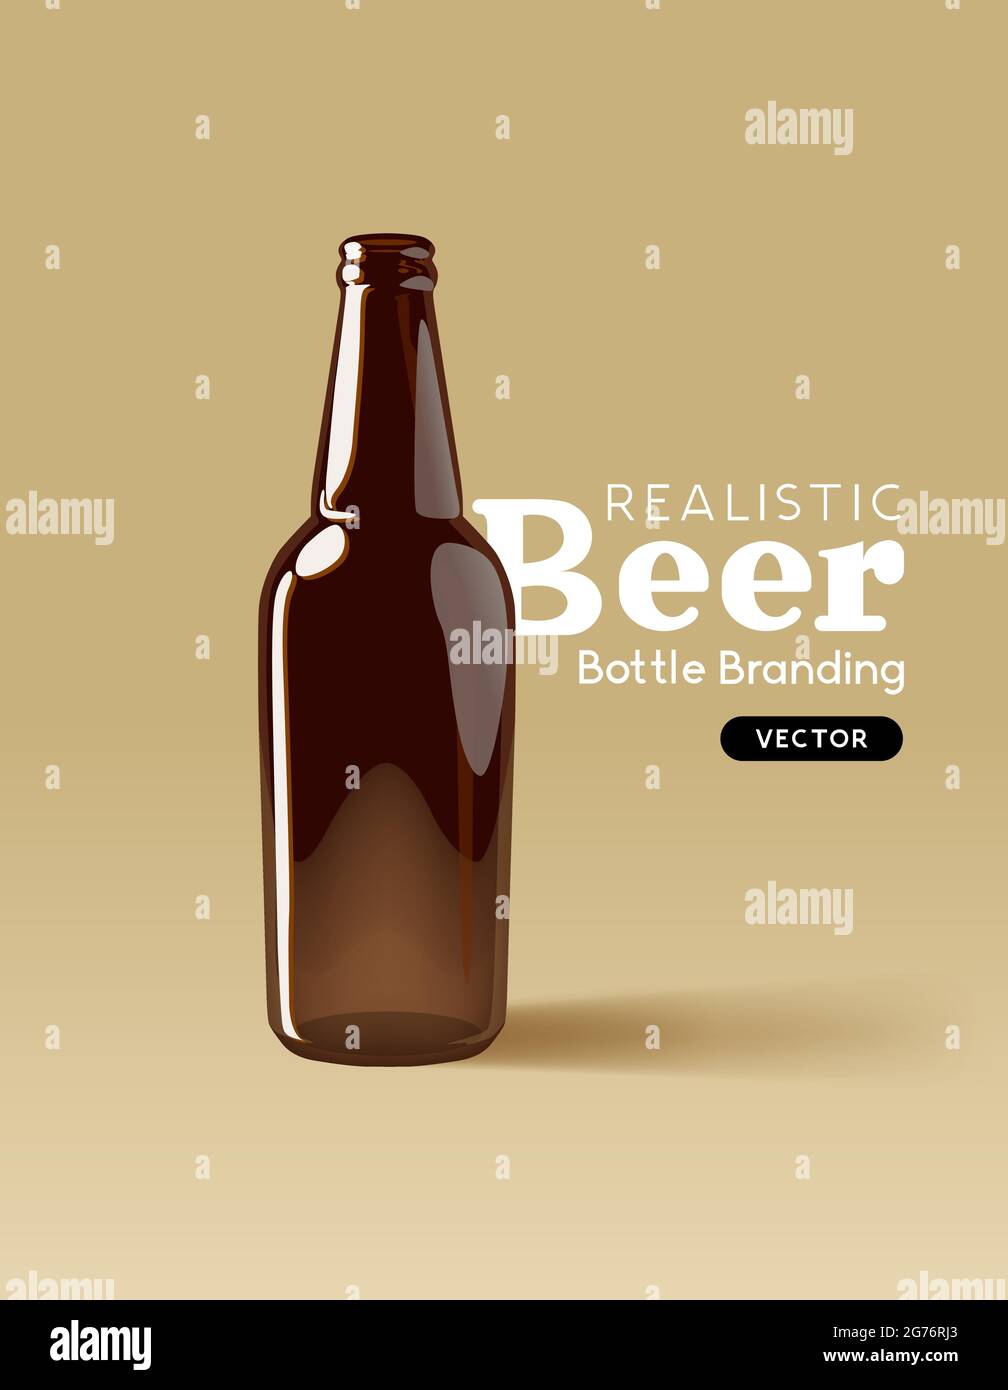 Eine realistische Bierflasche aus braunem Glas zum Verspotten von Designs. Moderne Marketingvorlage für Getränke Vektorgrafik Stock Vektor